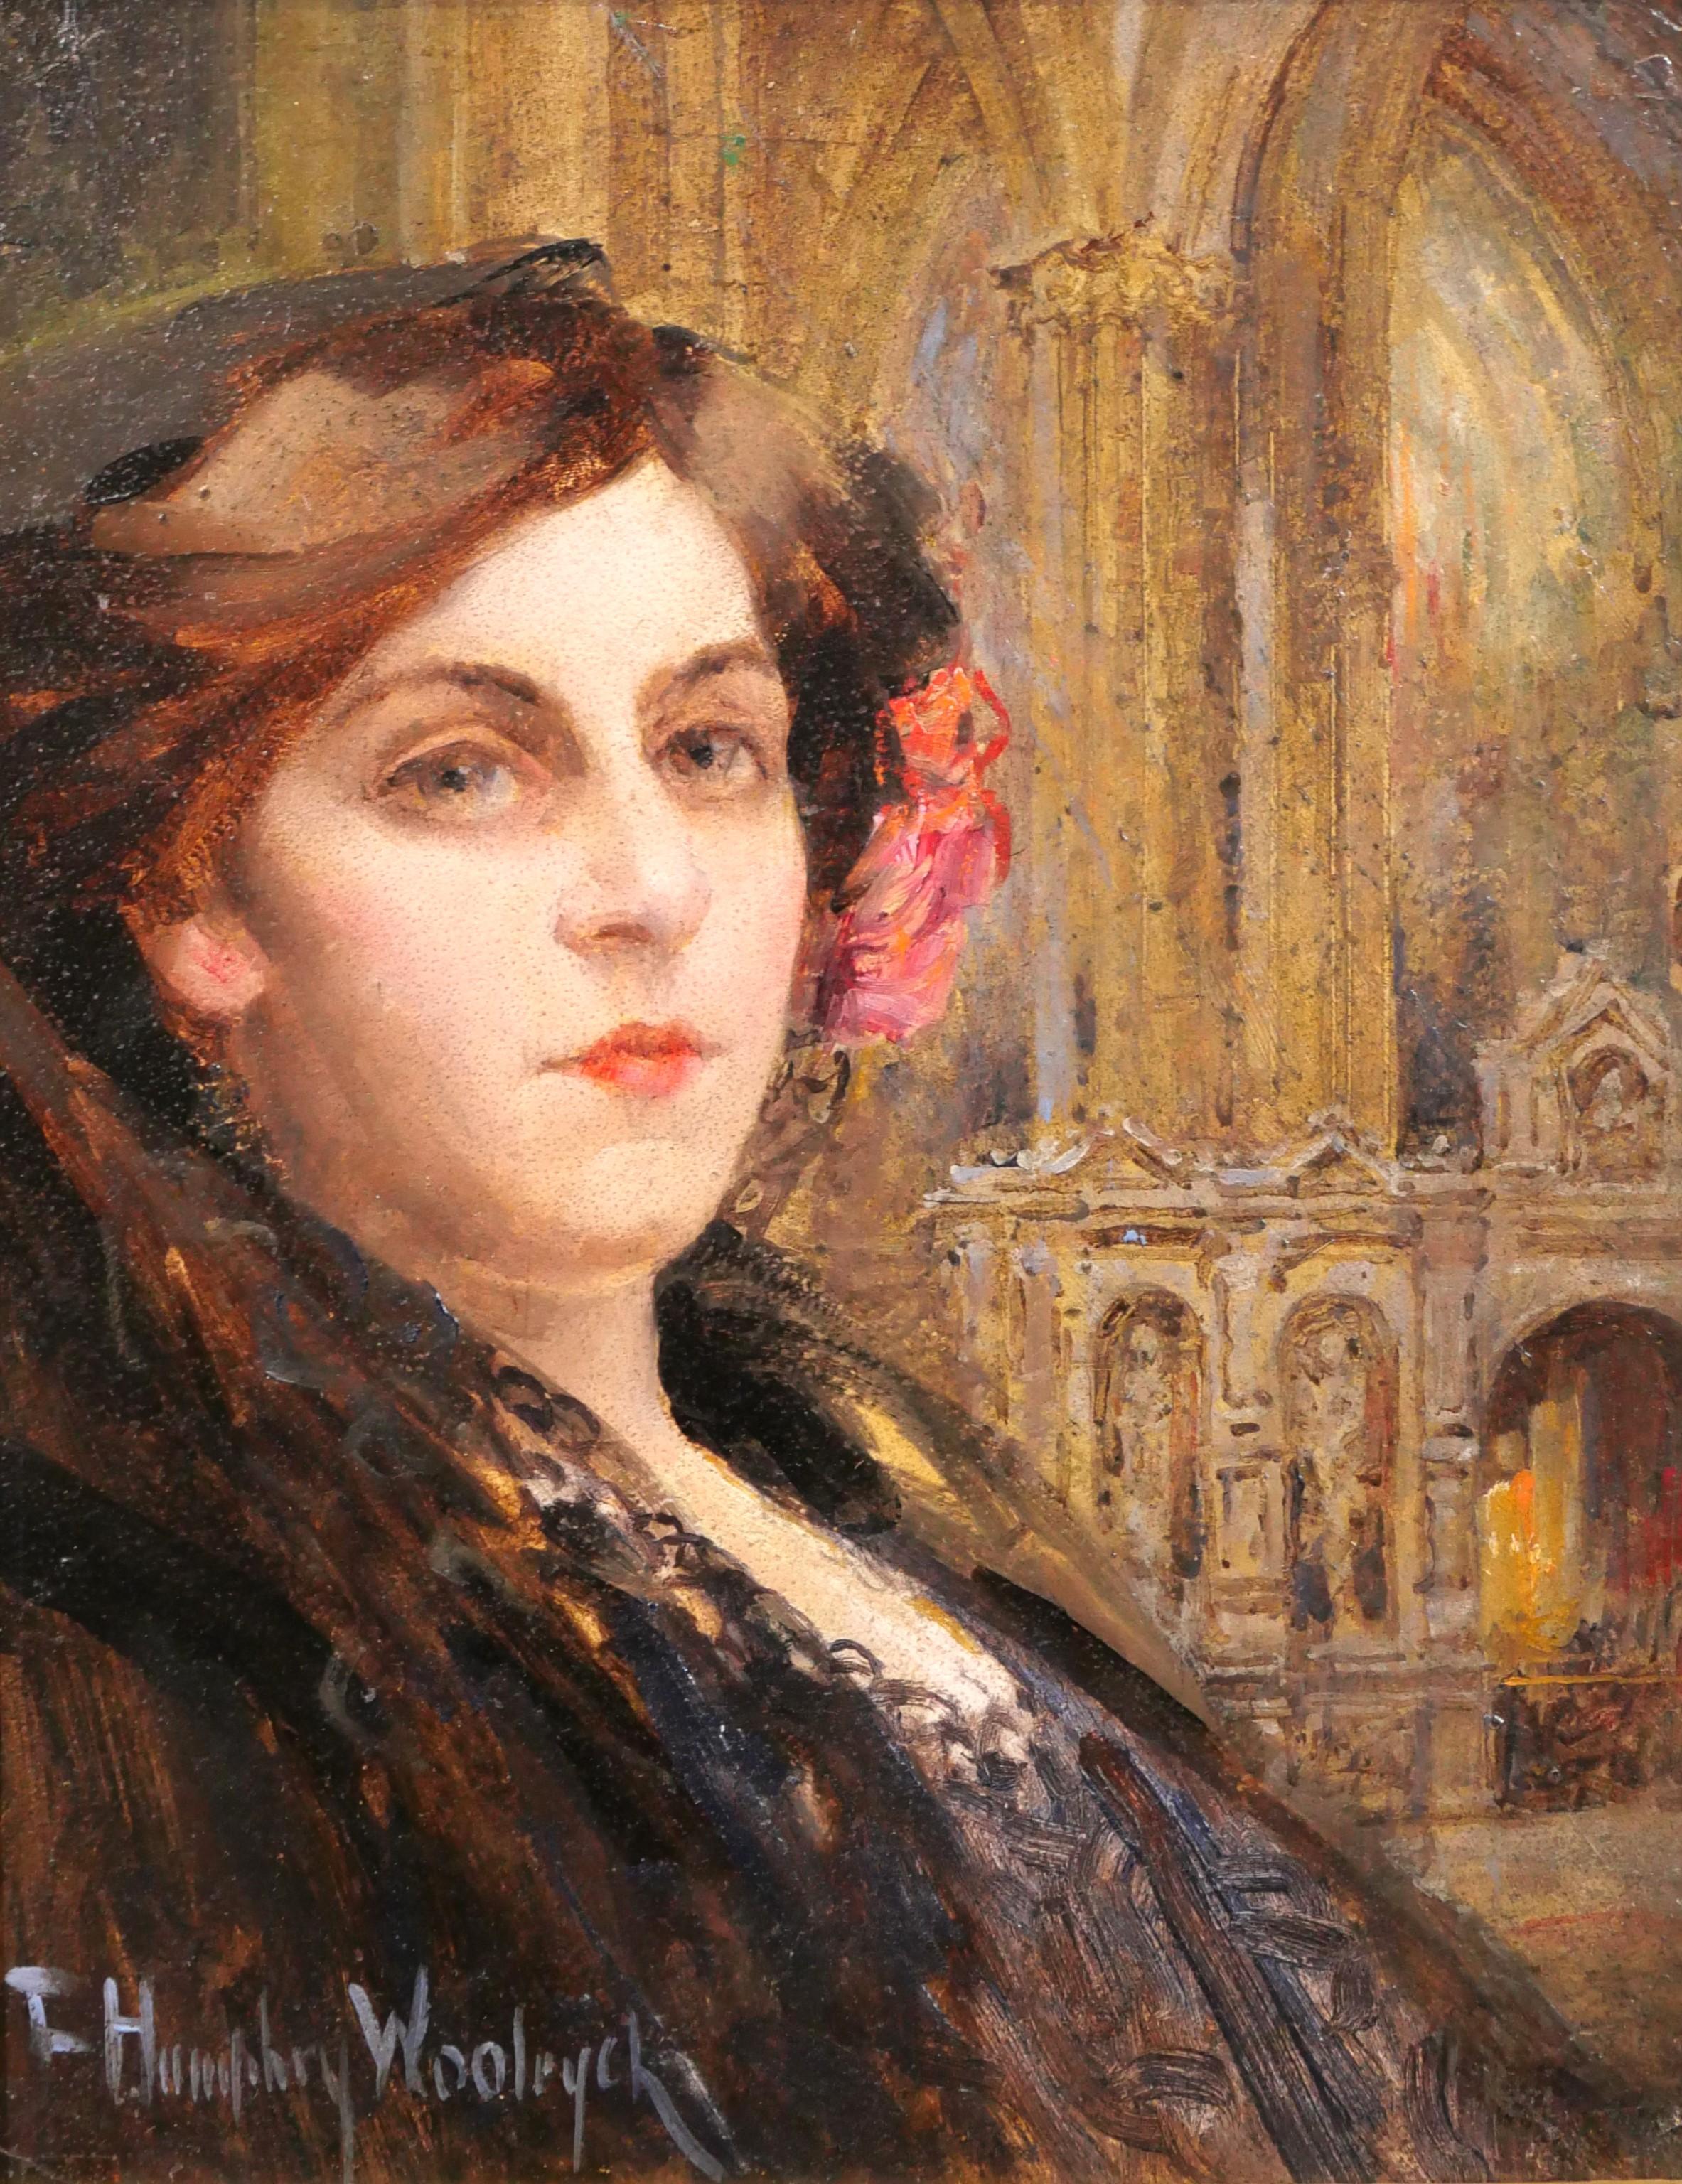 Portrait Painting Francis Humphrey Woolrych - Portrait d'une femme écossaise dans une église